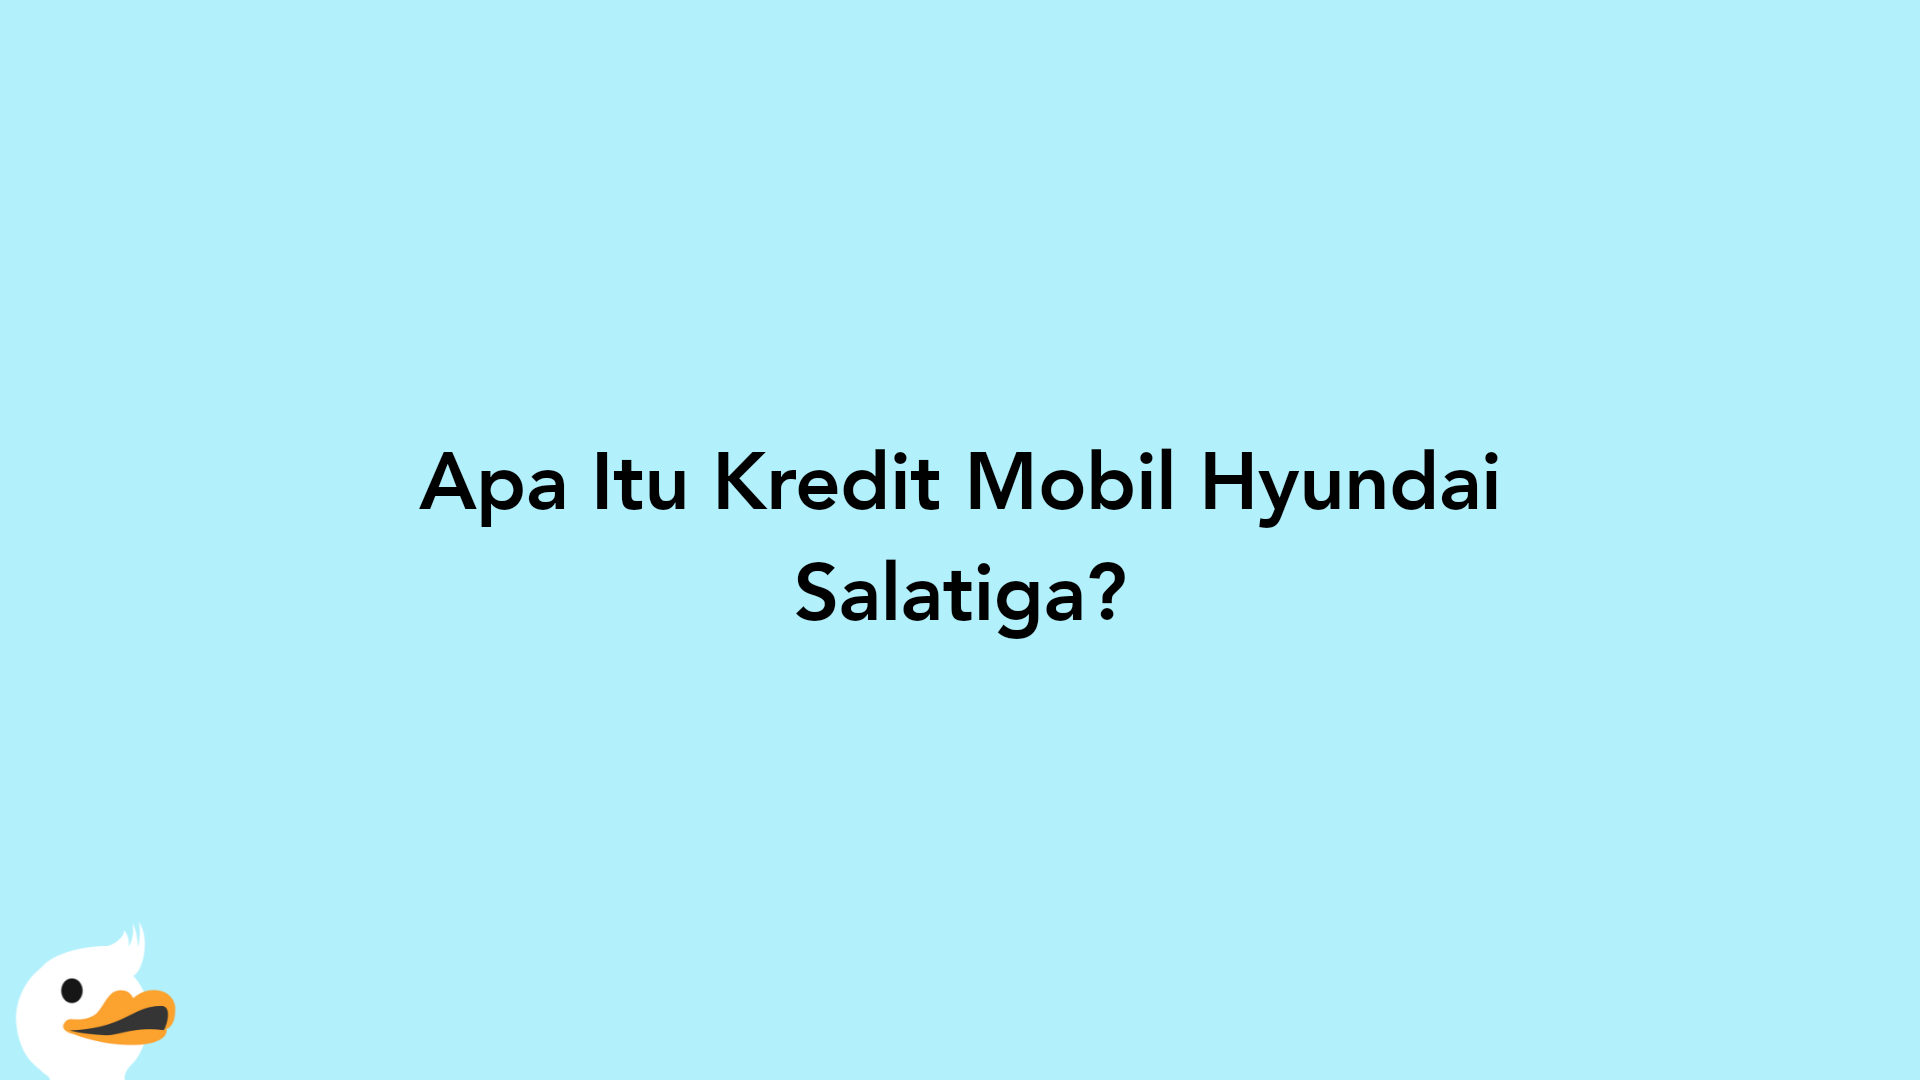 Apa Itu Kredit Mobil Hyundai Salatiga?